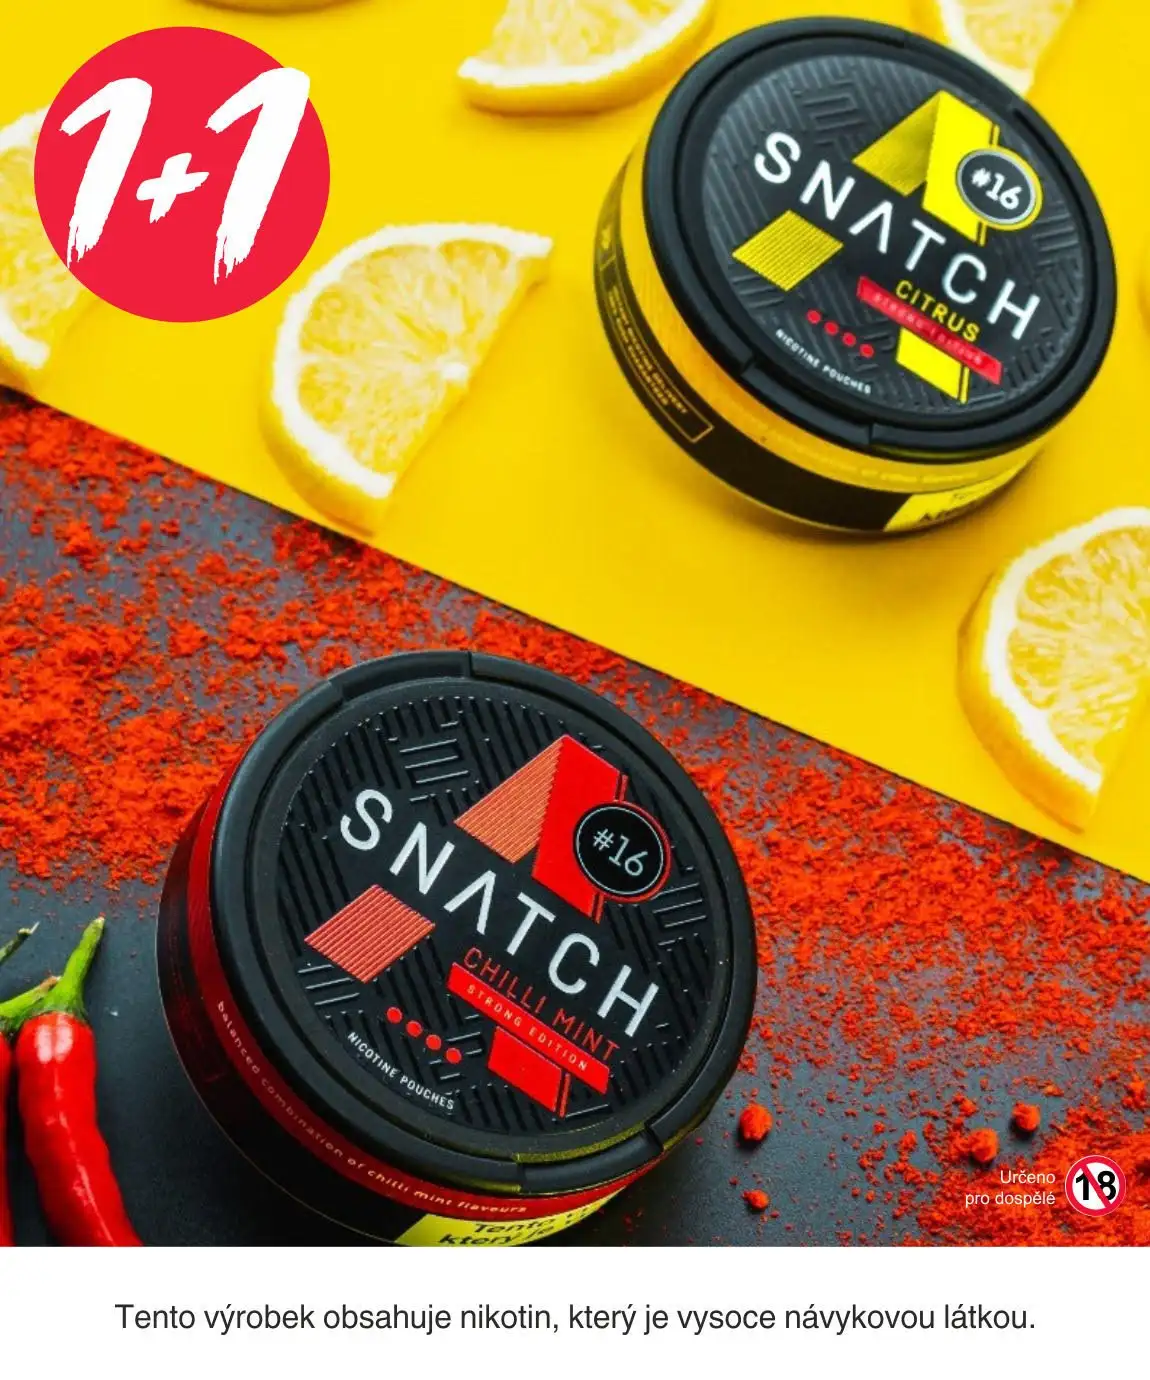 Nový Snatch Chilli a Citrus  V Akci 1+1 pouze zde!